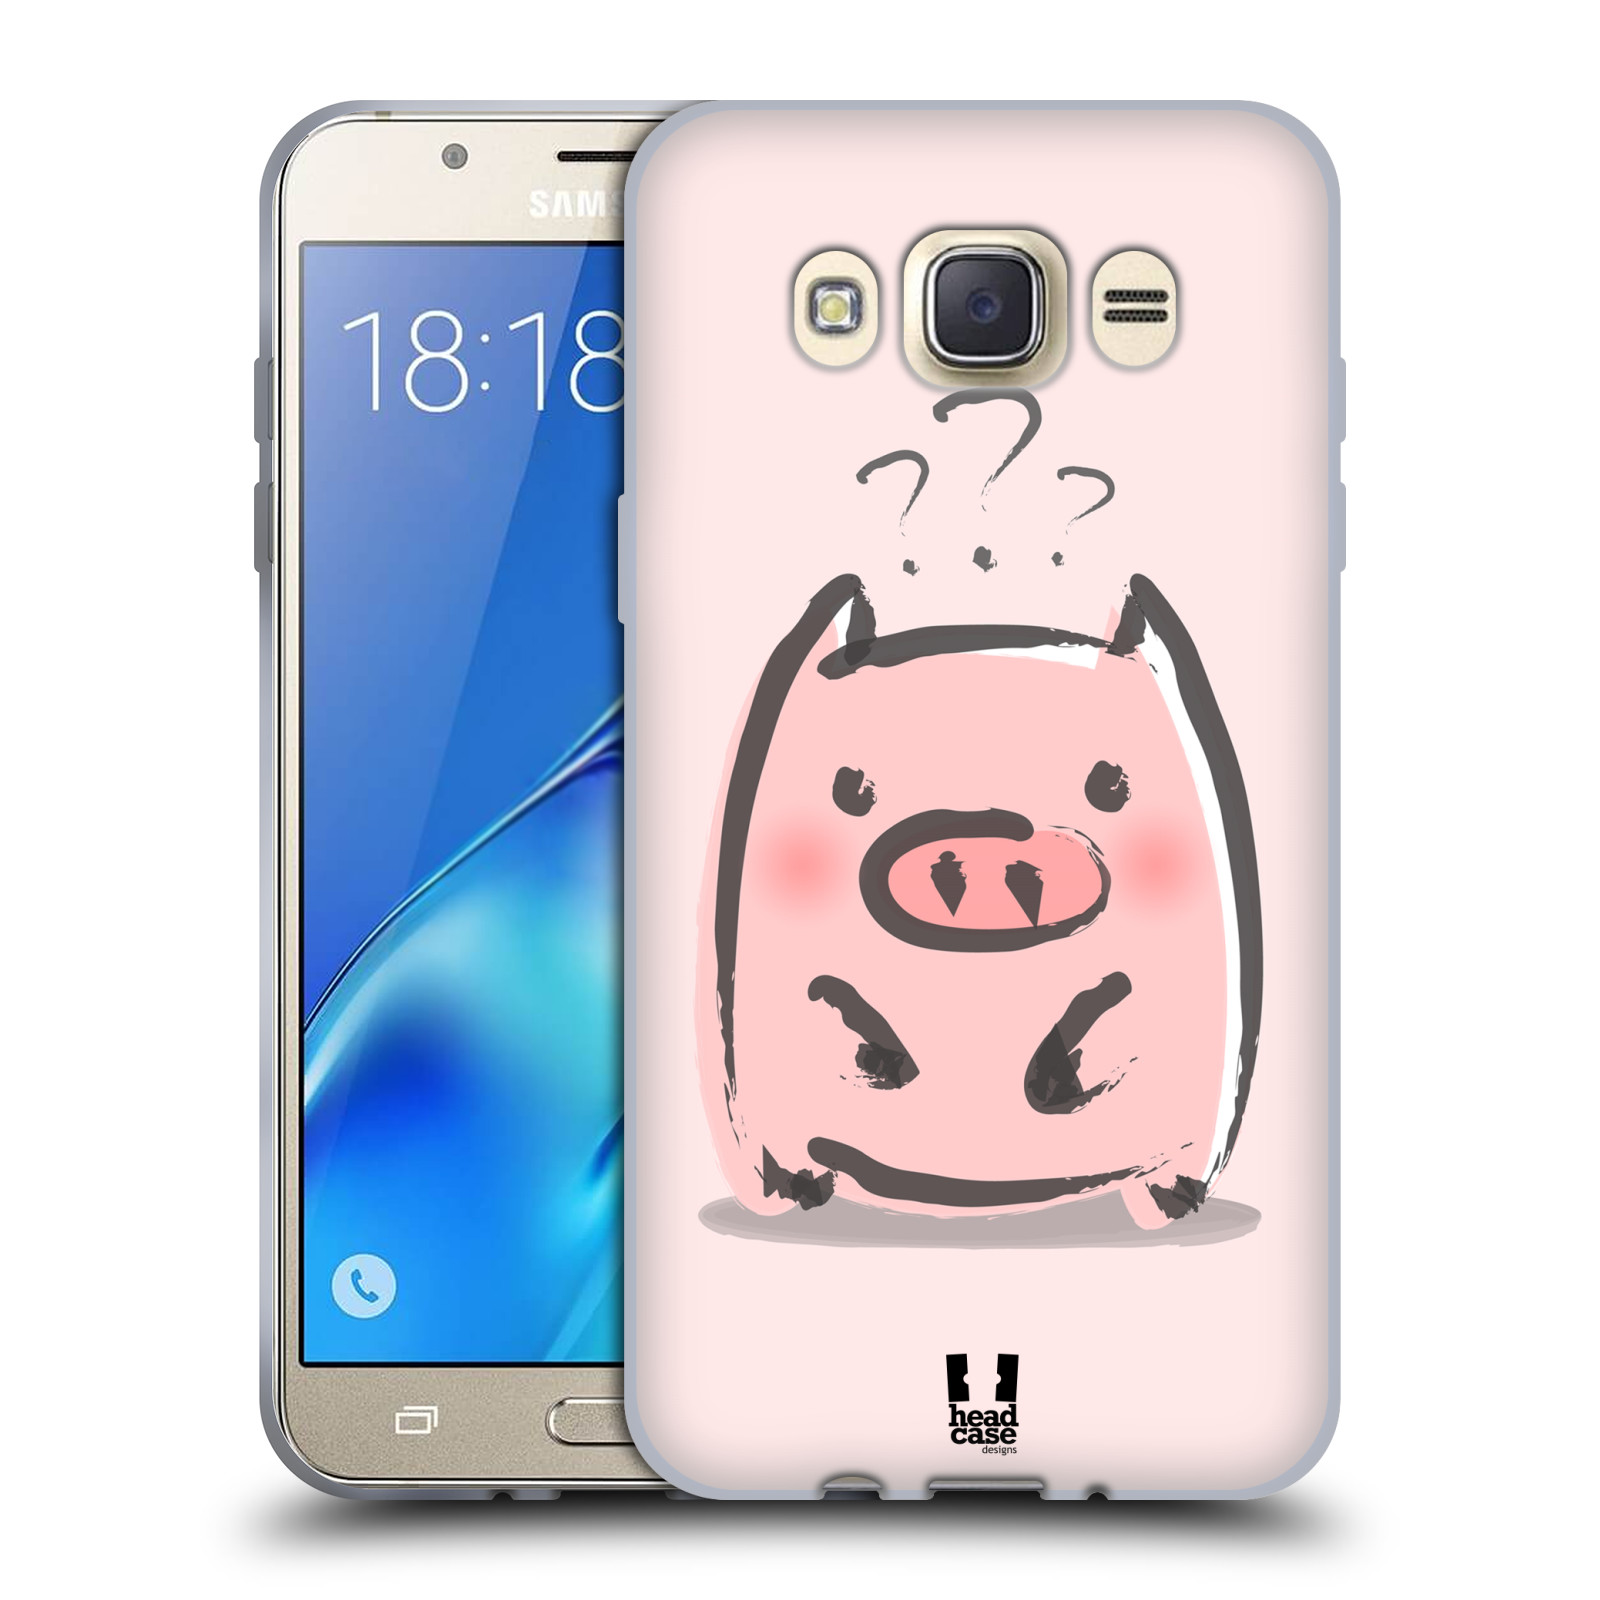 HEAD CASE silikonový obal, kryt na mobil Samsung Galaxy J7 2016 (J710, J710F) vzor roztomilé růžové prasátko otazník